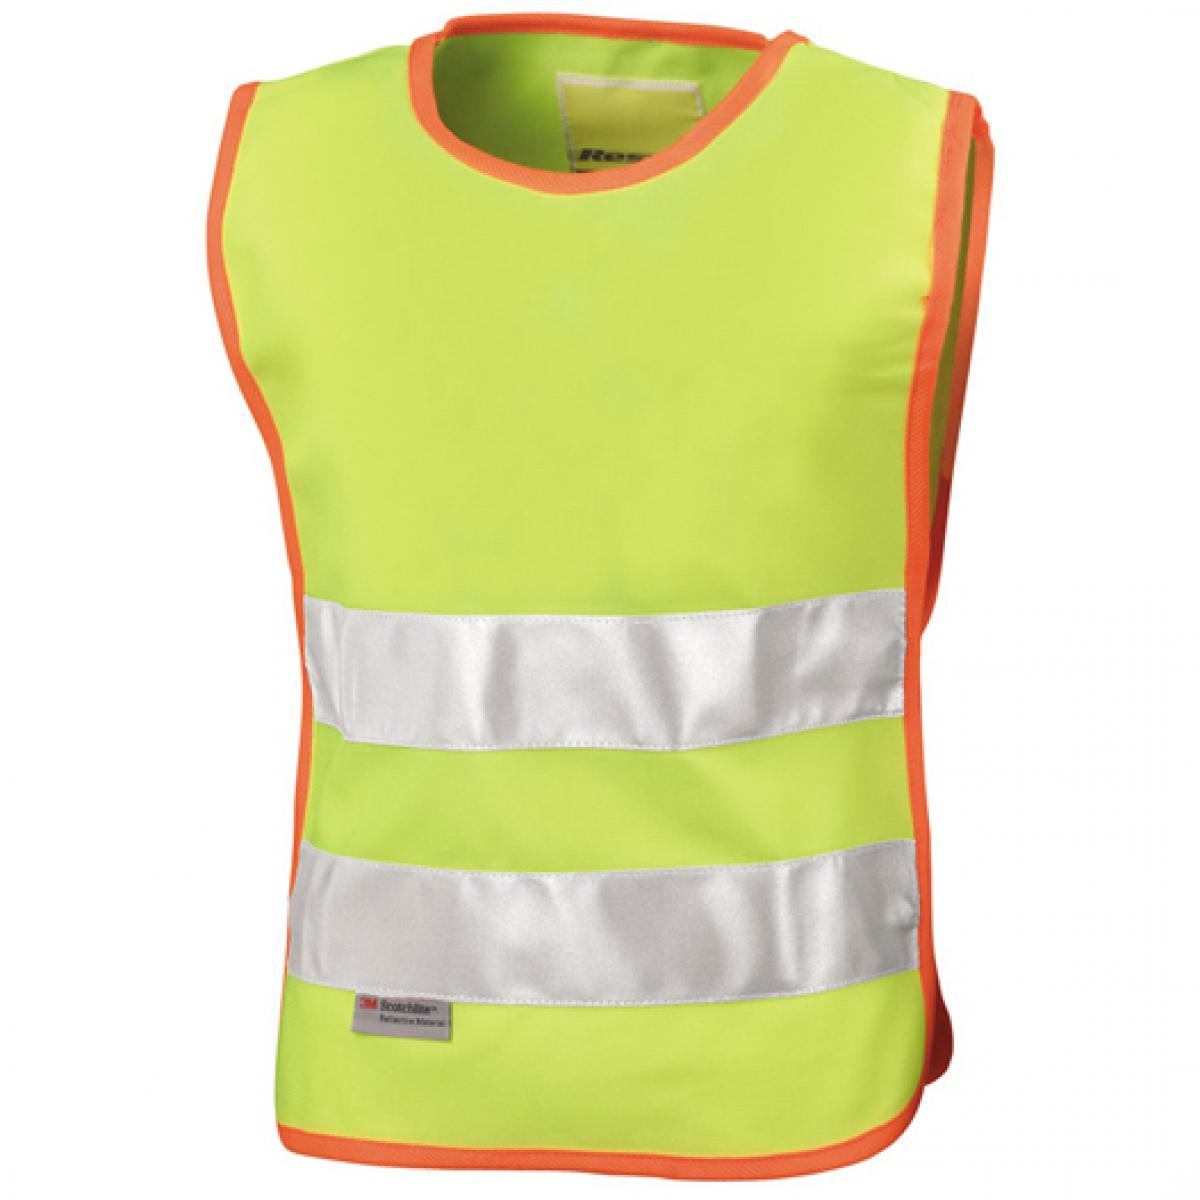 Hersteller: Result Herstellernummer: R212J Artikelbezeichnung: Kinder Sicherheitsweste - Junior Safety Tabard | EN 1150 Spe Farbe: Fluorescent Yellow